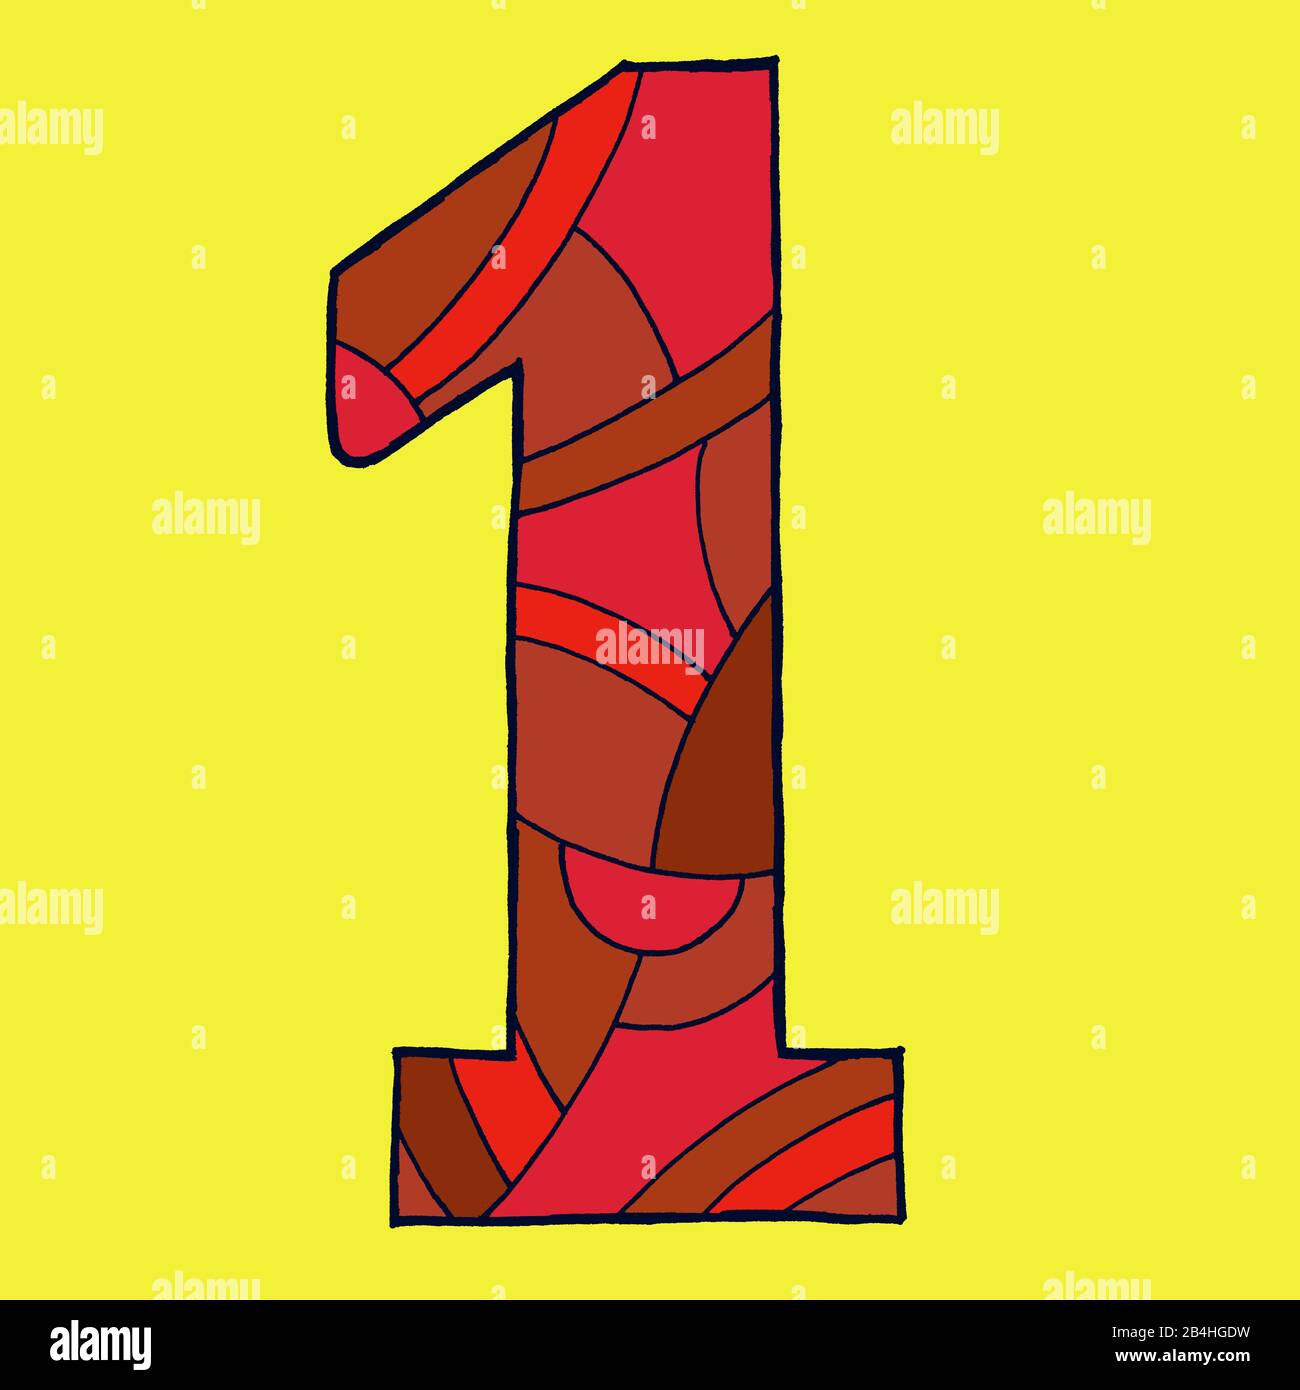 Ziffer eins, gezeichnet als Vektorillustration, in roten Farbtönen auf gelbem Hintergrund in der Pop-Art-Stilistik Stockfoto